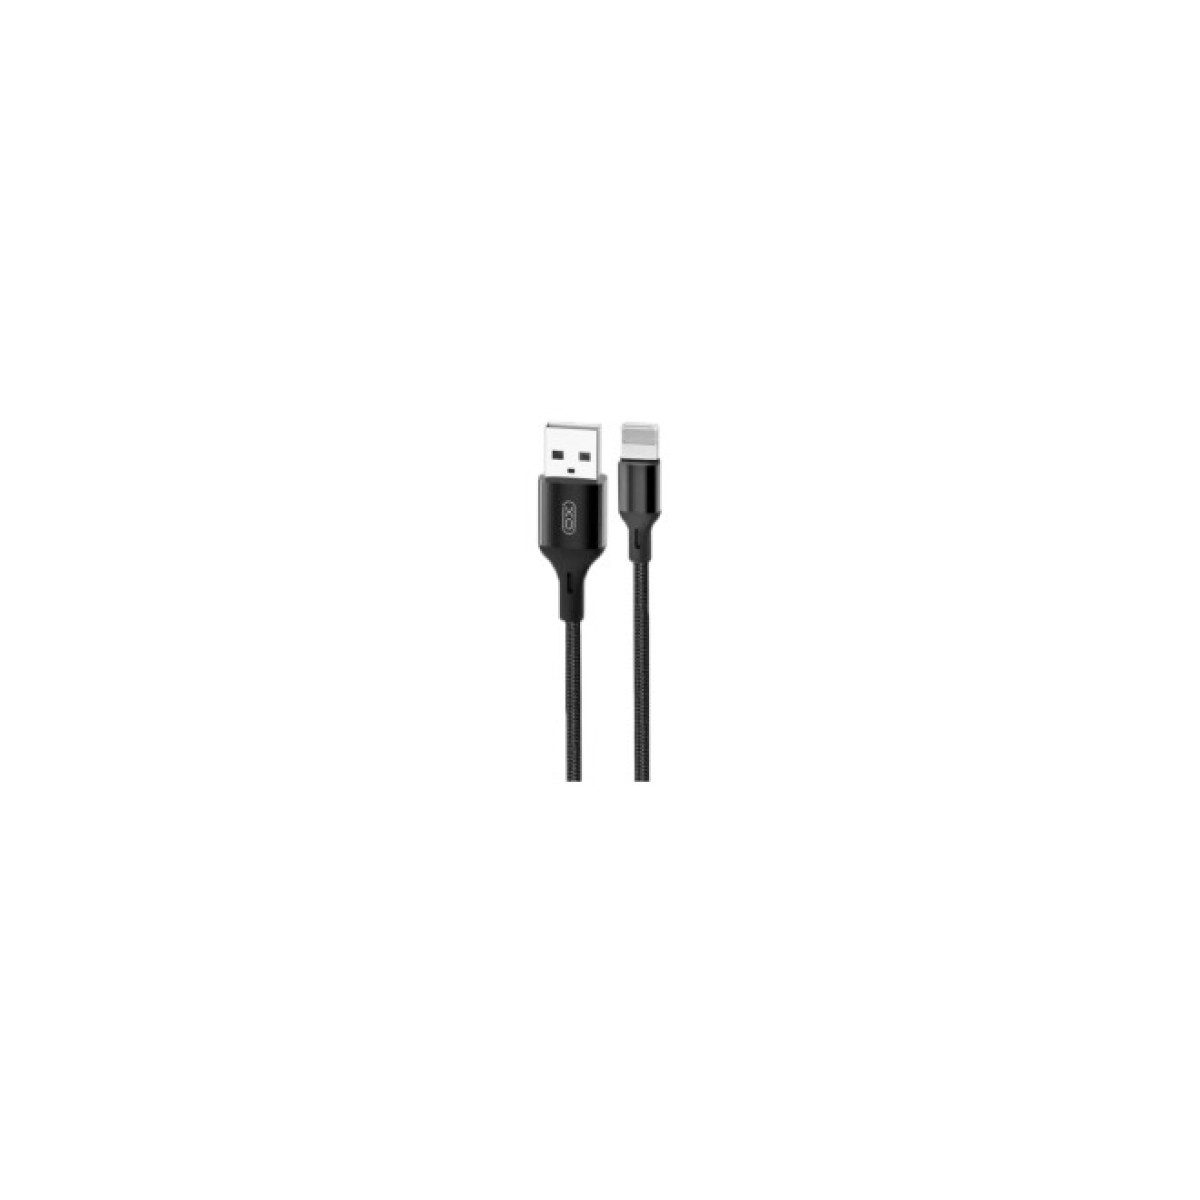 Дата кабель USB 2.0 AM to Lightning 1.0m NB143 Braided Black XO (XO-NB143i1-BK) 256_256.jpg